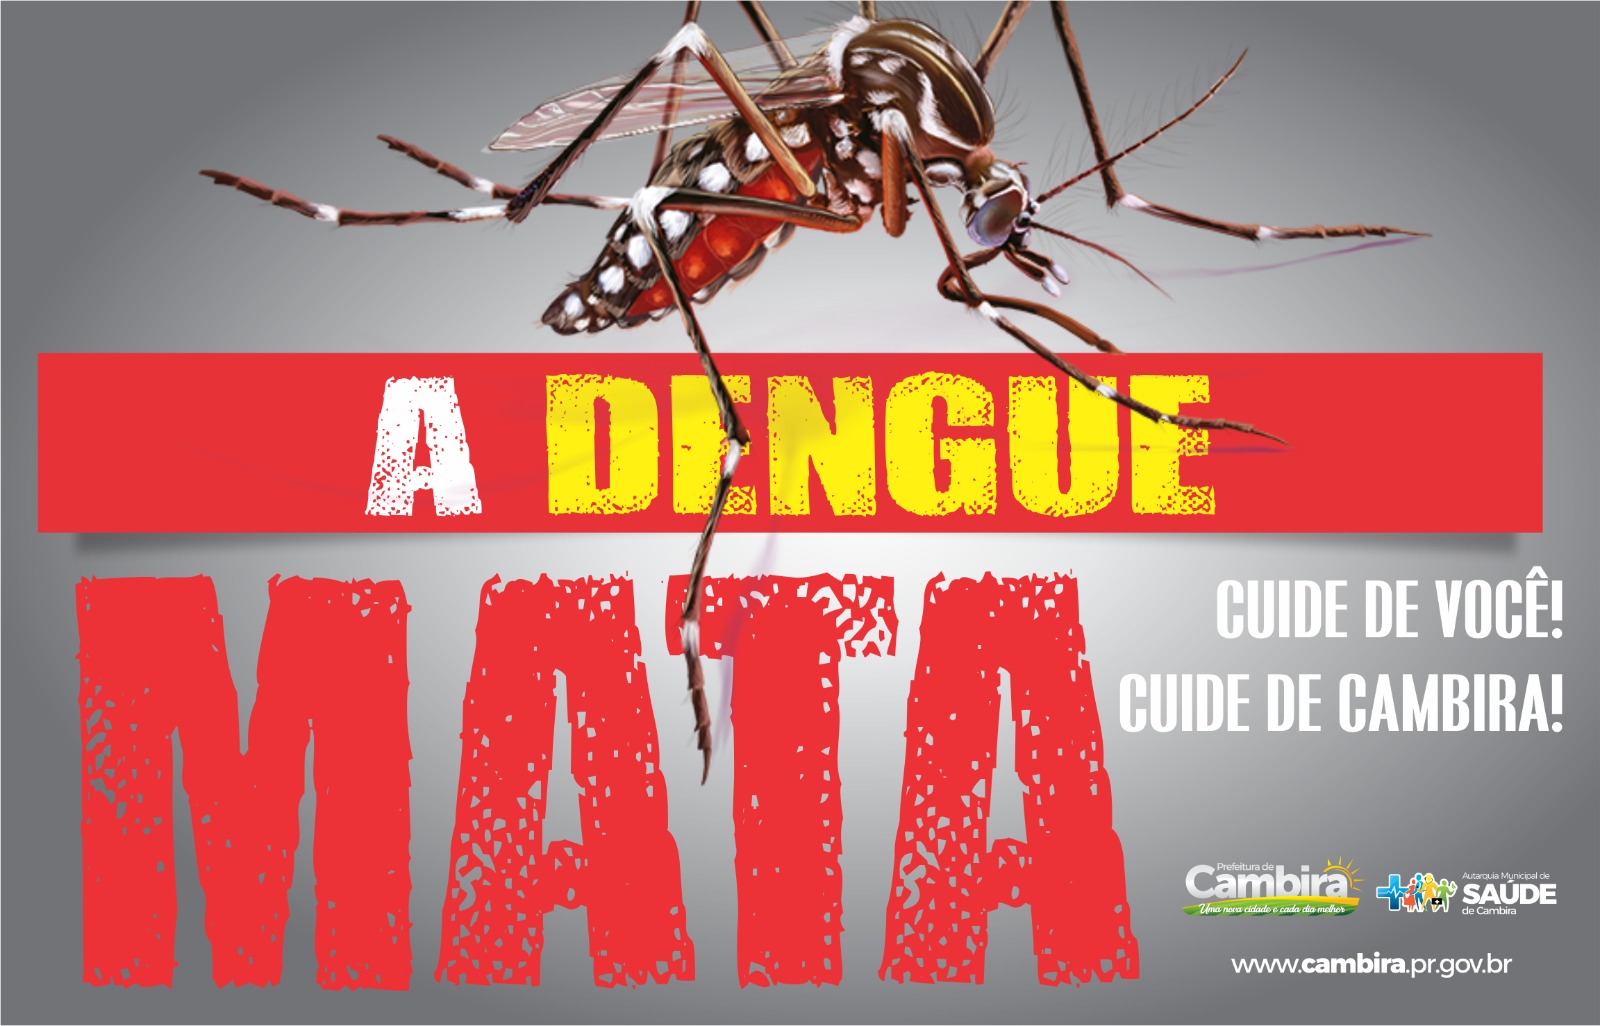 Cambira contra a Dengue